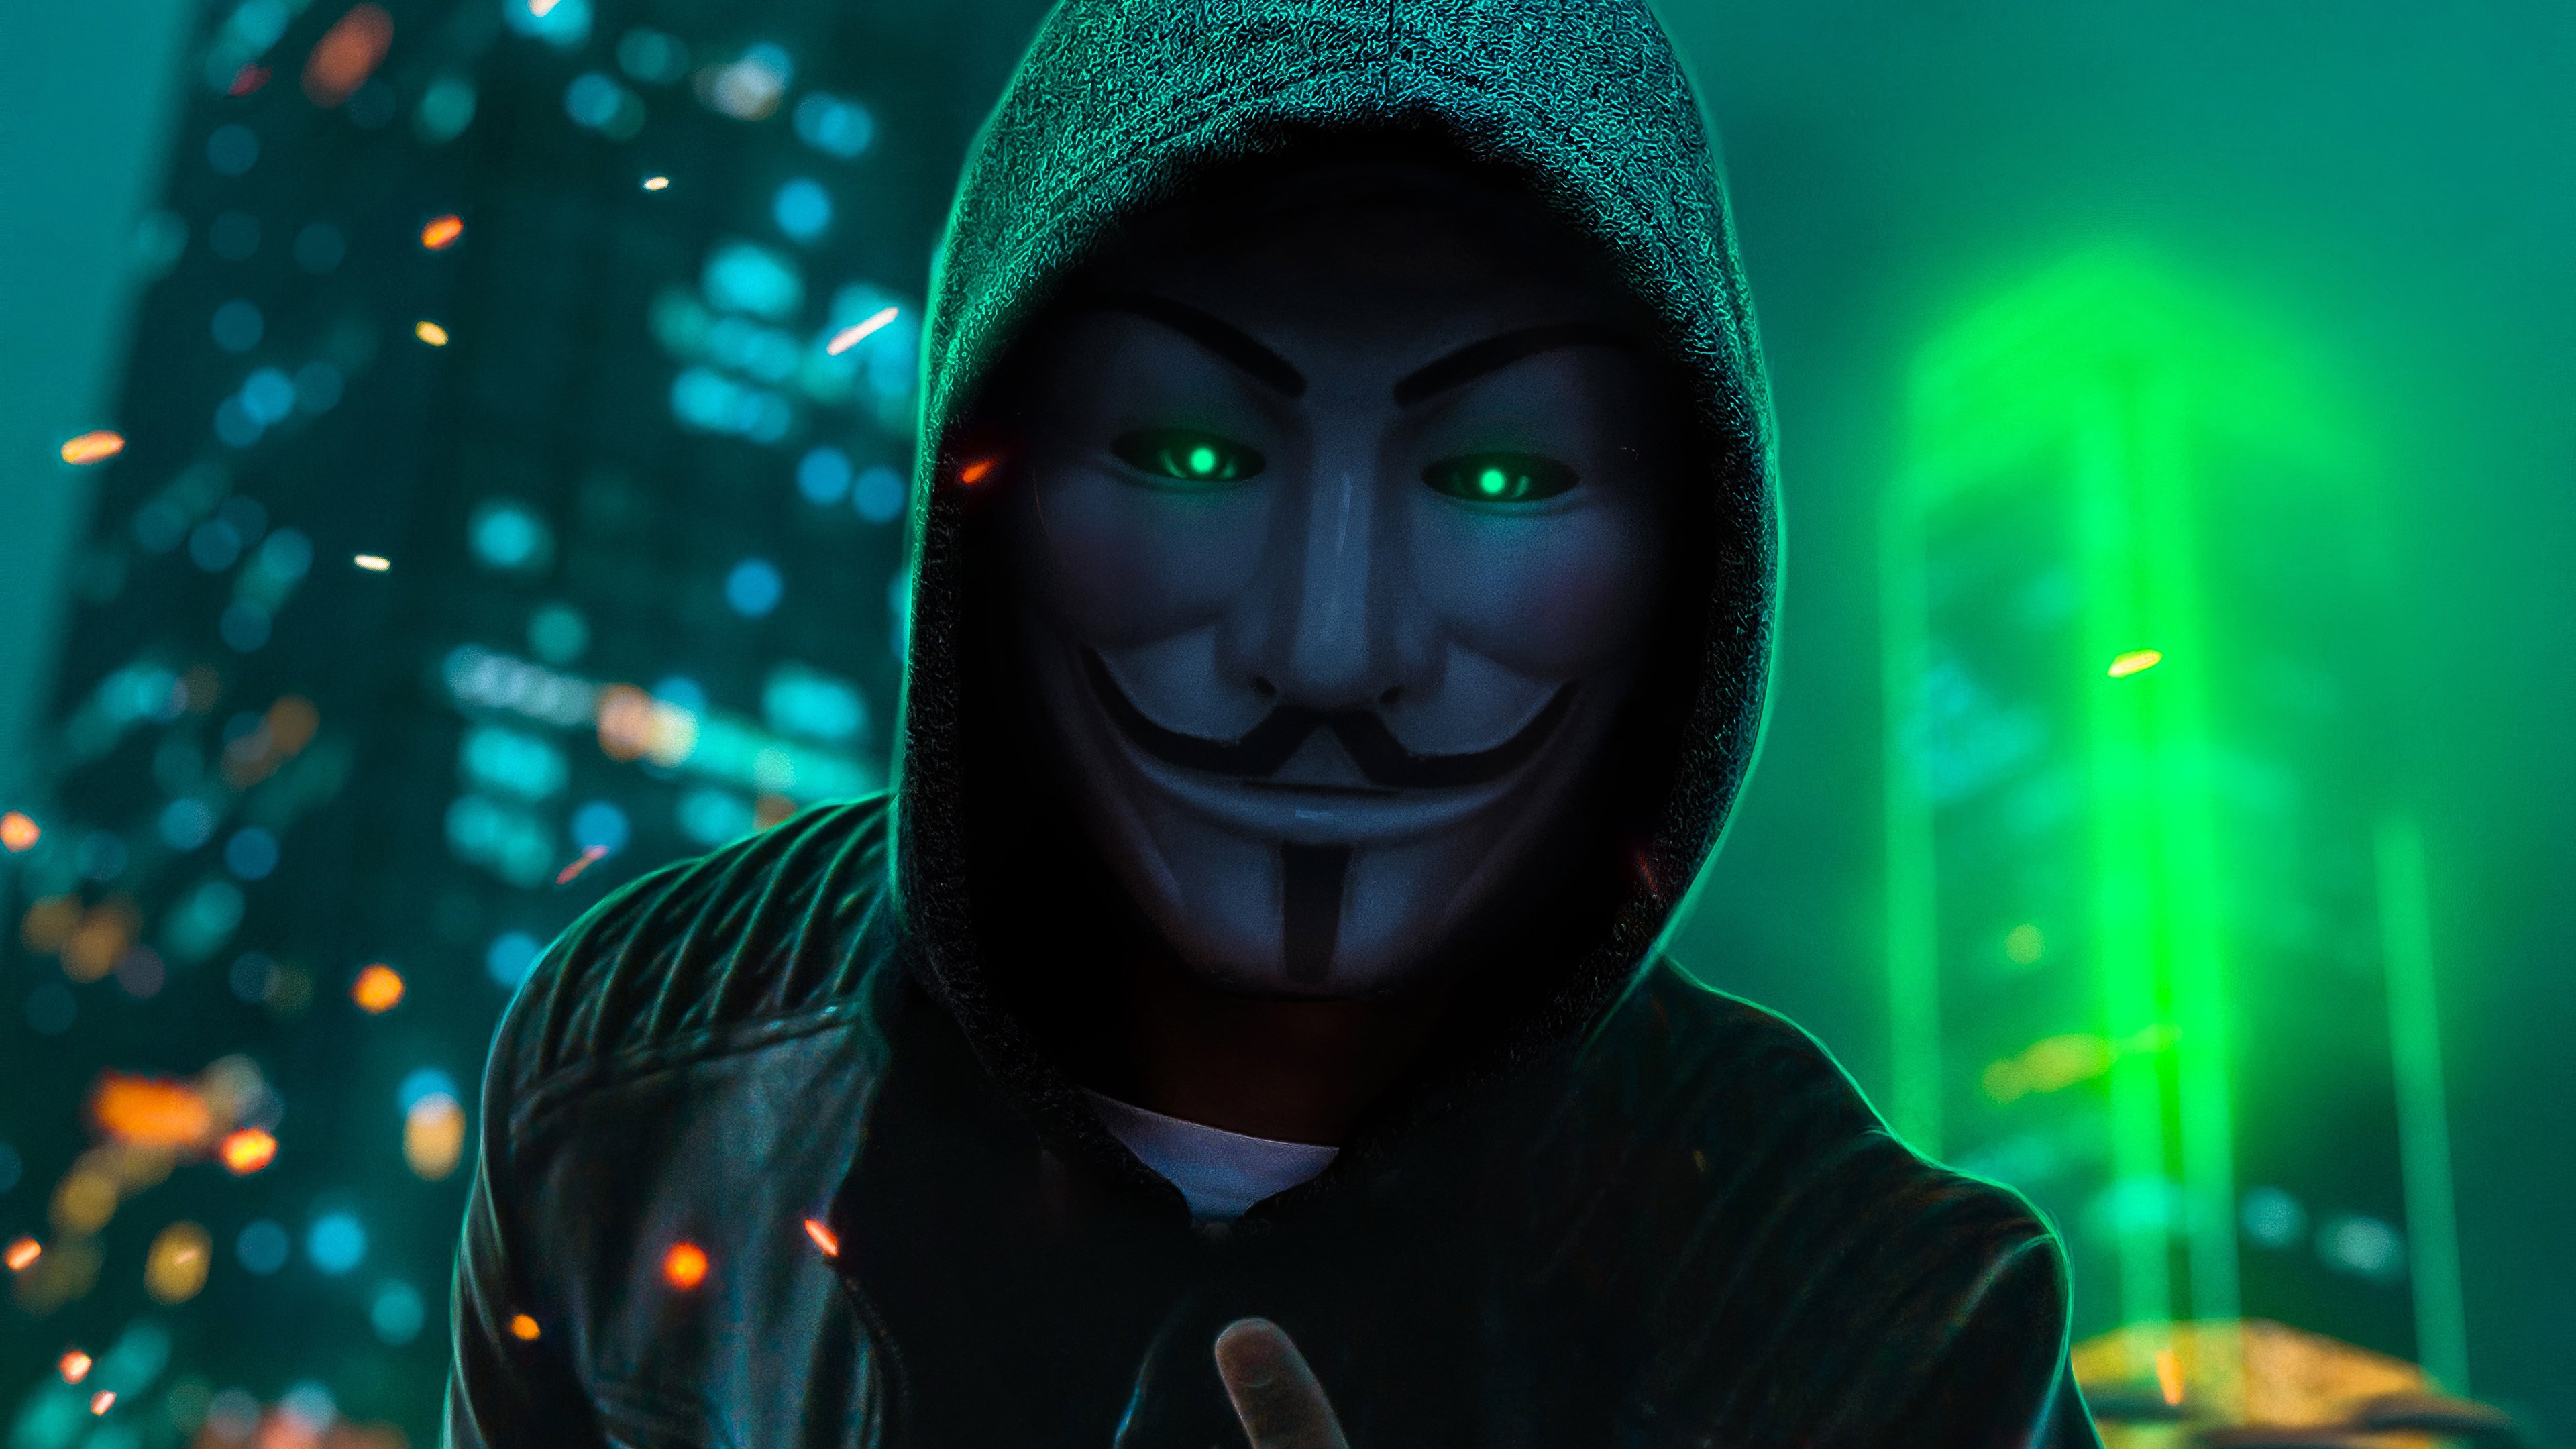 Fondos de pantalla Mascara de Anonimo en colores verde neon